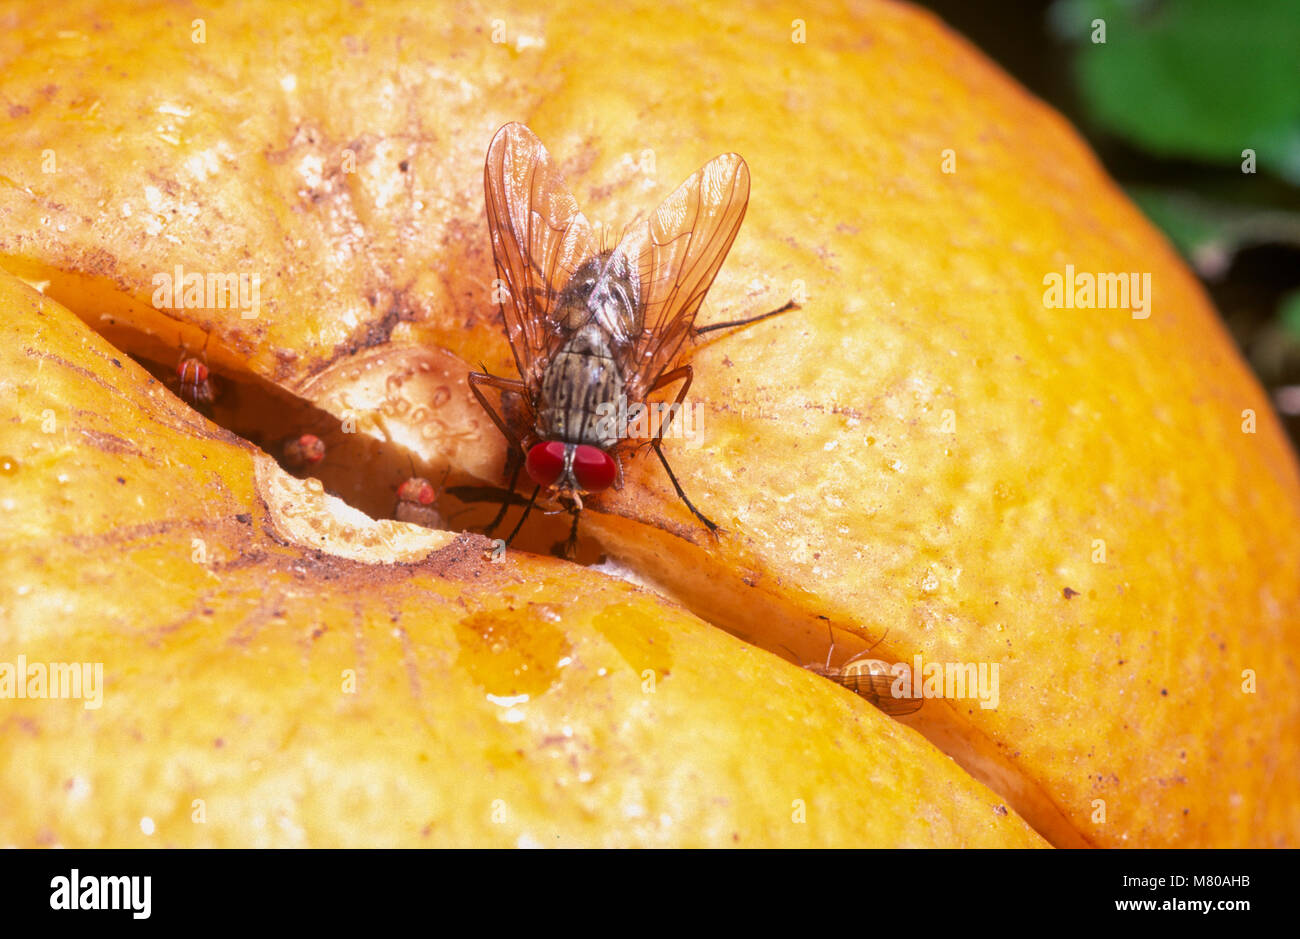 Red-eyed muscid fly (Muscidae) and vinegar flies (Drosophilidae), feeding on orange Stock Photo